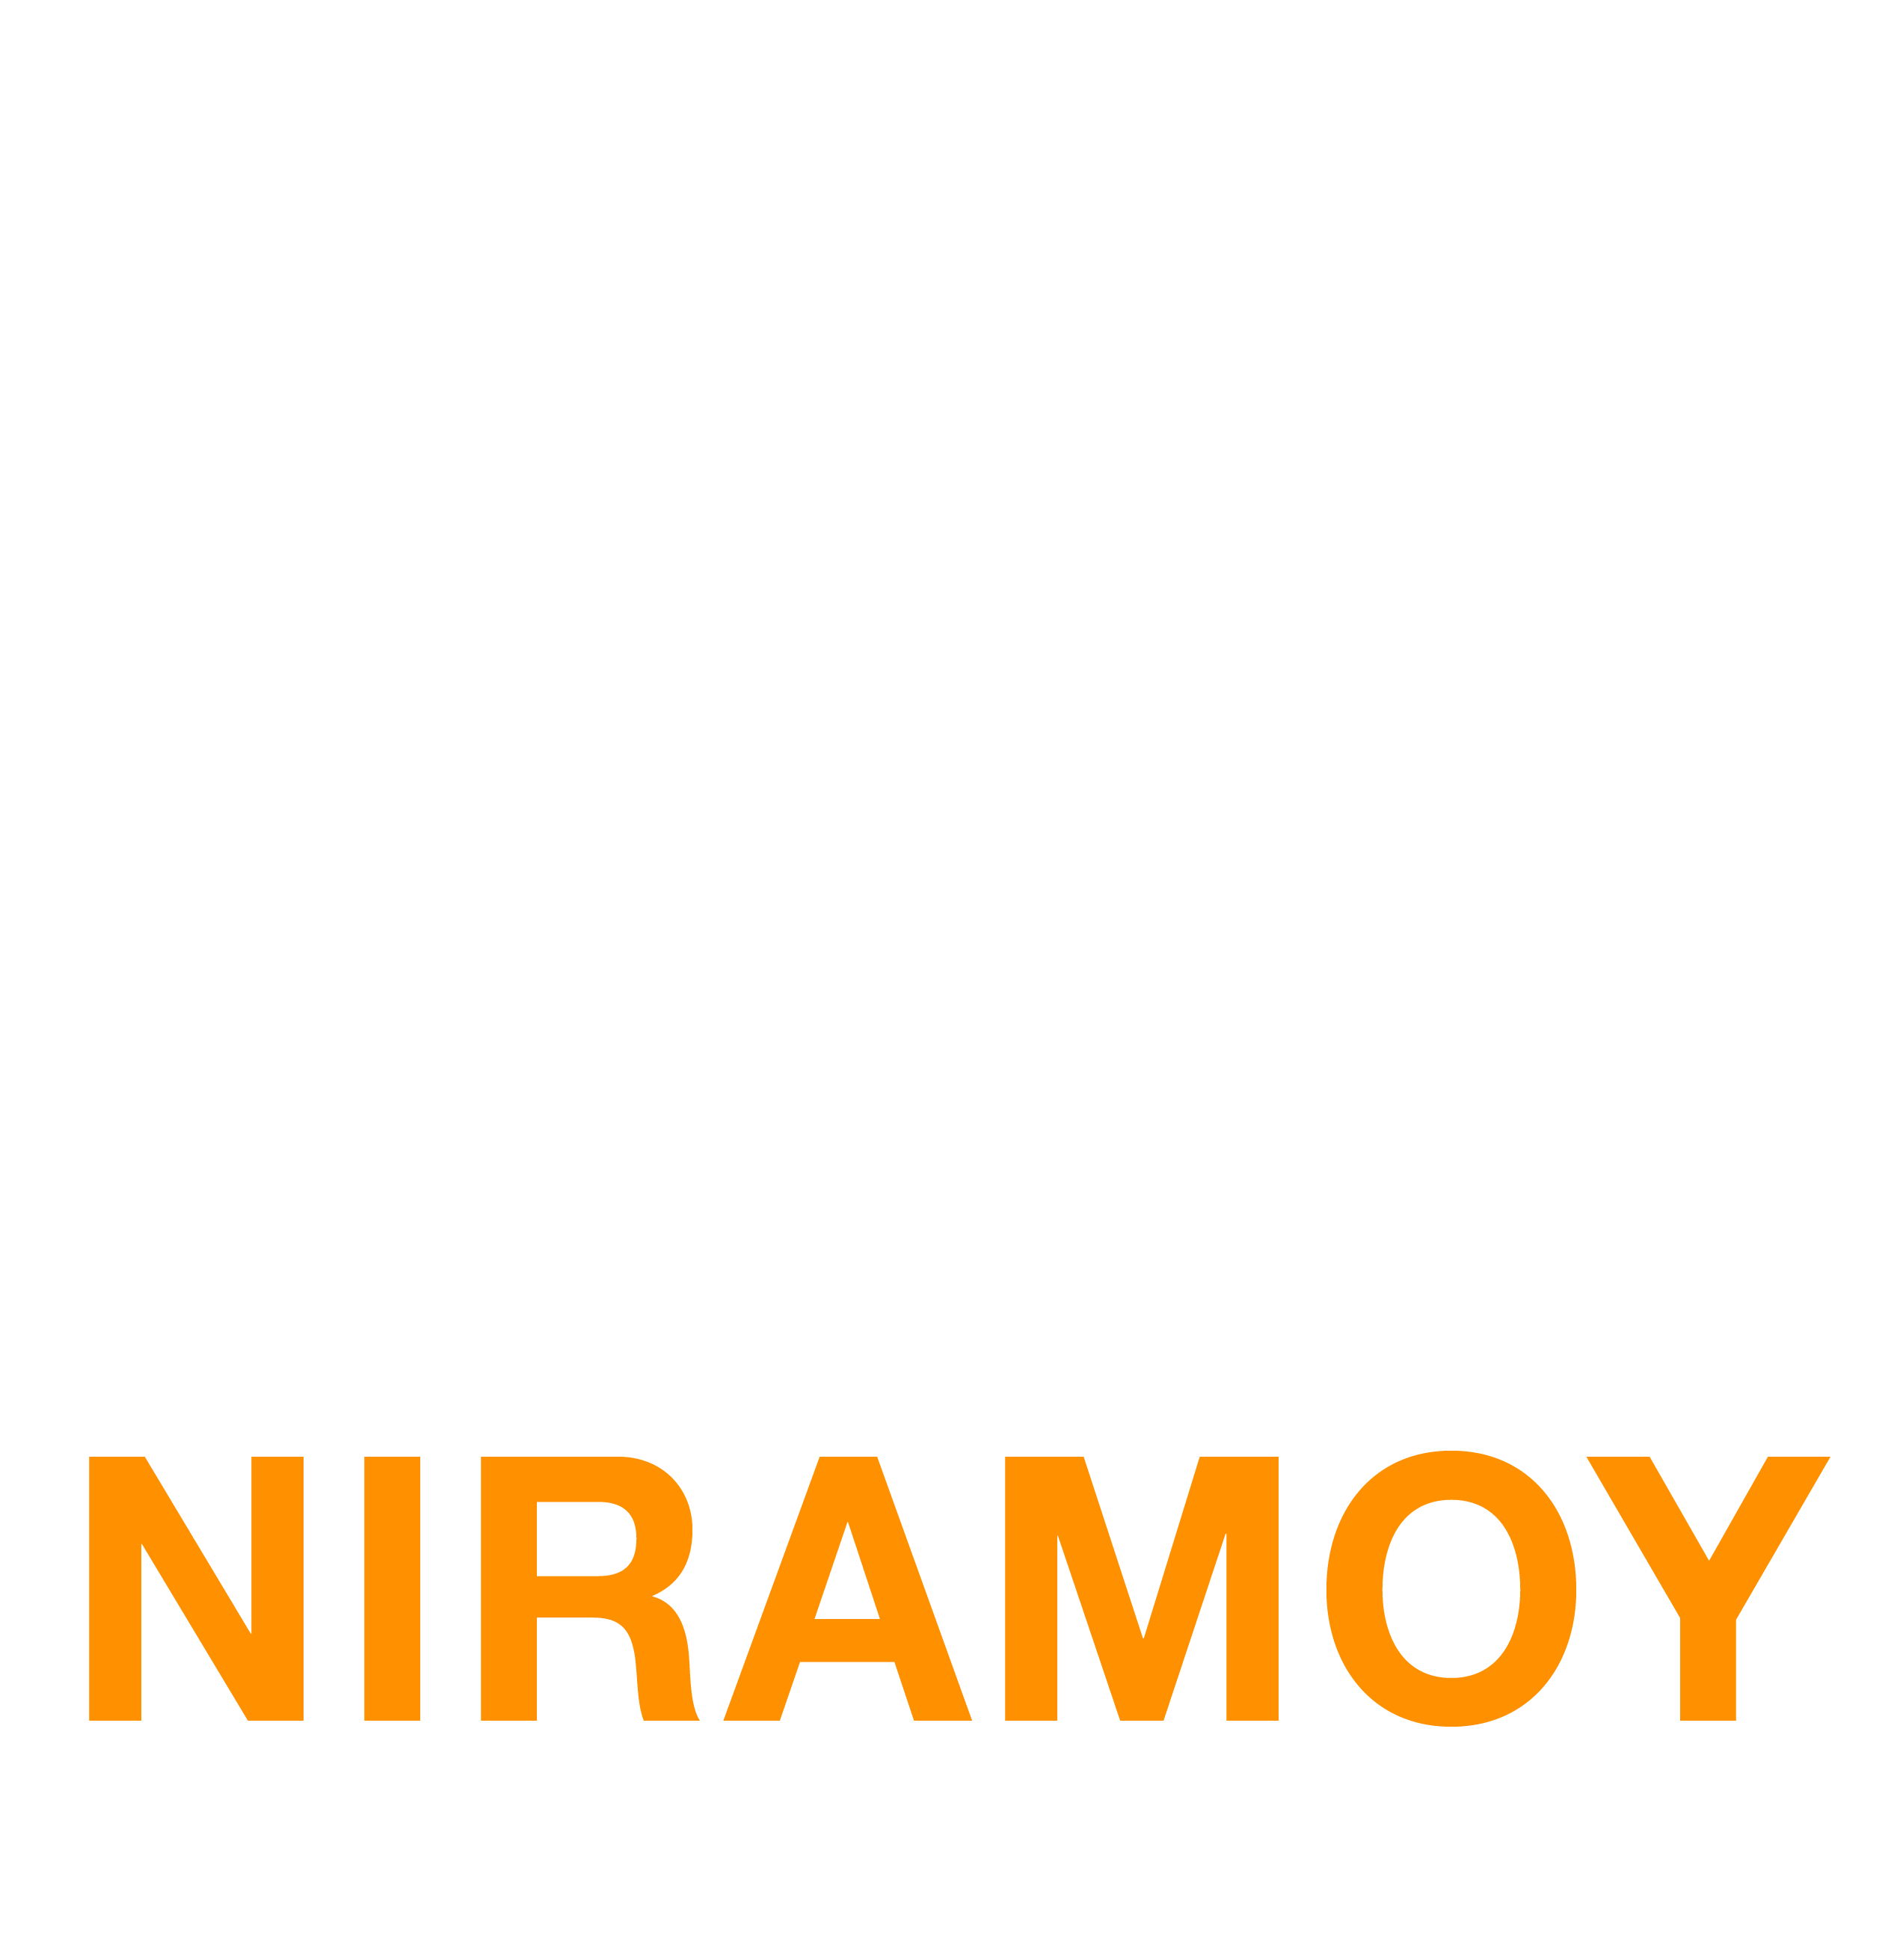 Niramoy Hospital